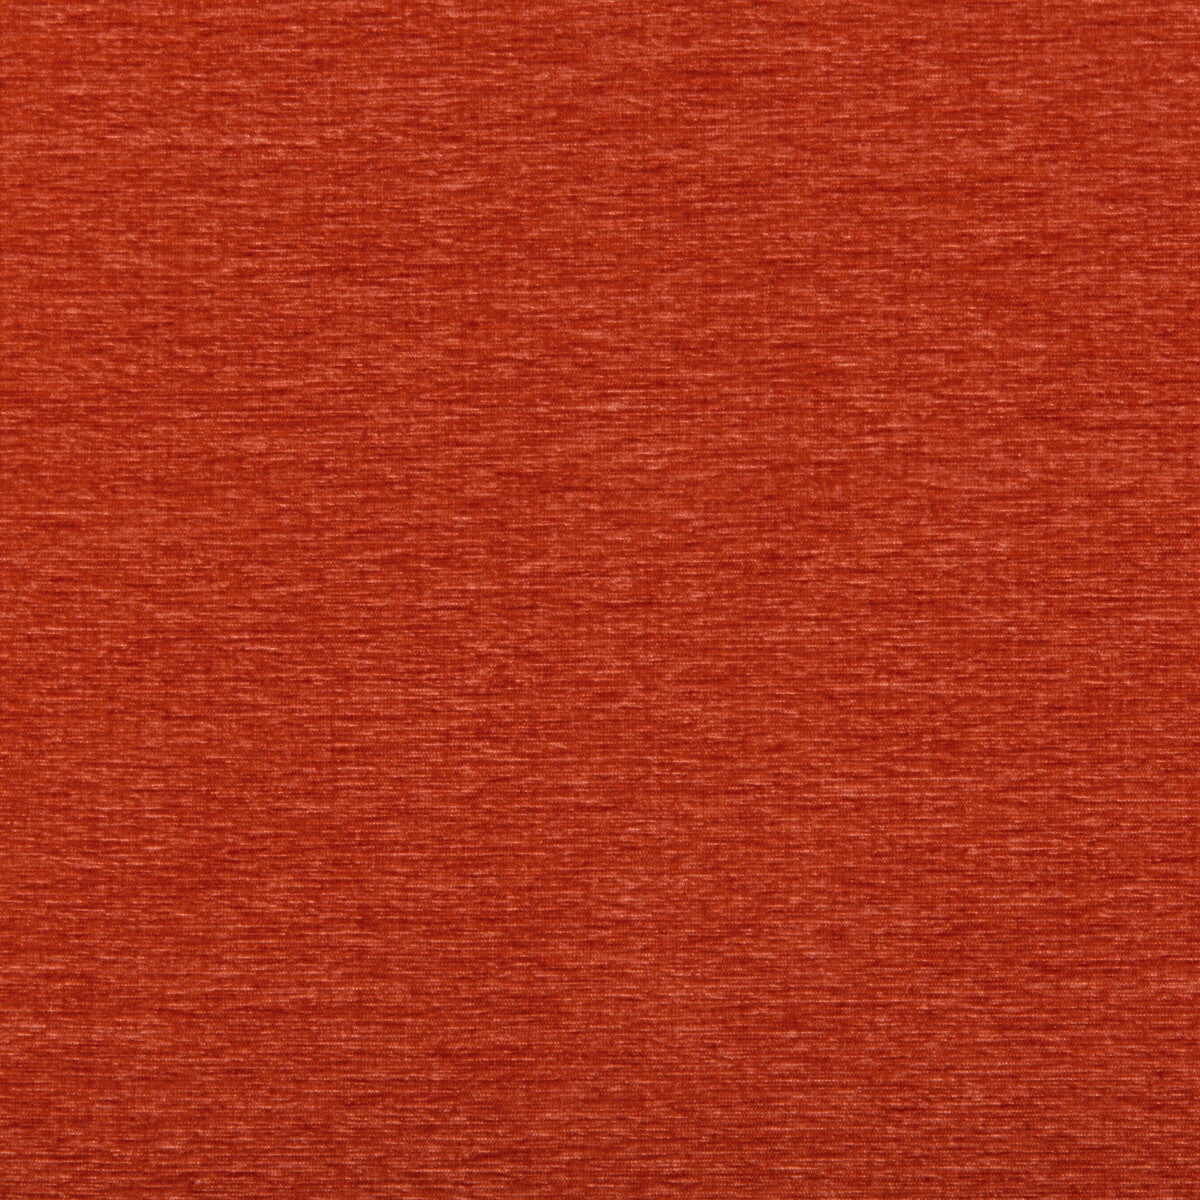 Karvet Basics fabric in 35467-12 color - pattern 35467.12.0 - by Kravet Basics